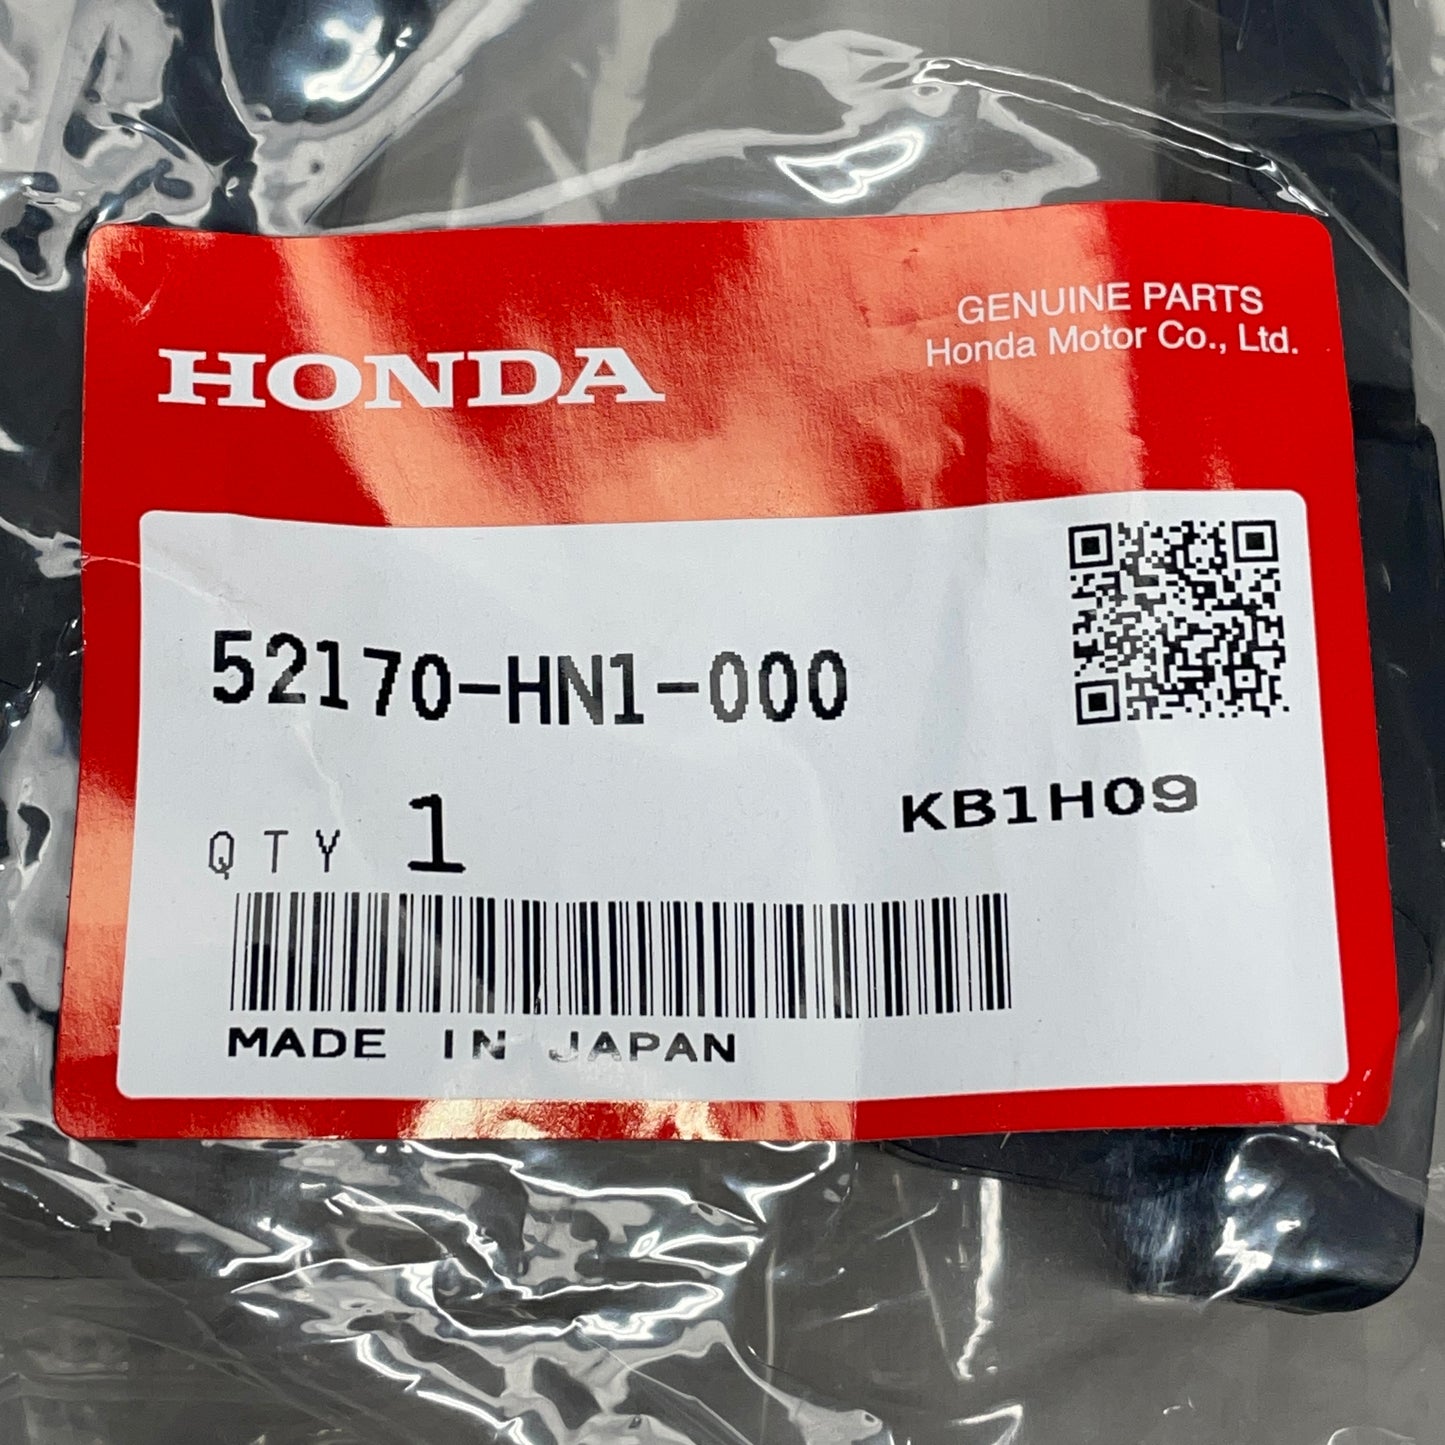 HONDA Chain Slider Guide Sportrax TRX400EX TRX400X 52170-HN1-000 OEM (New)